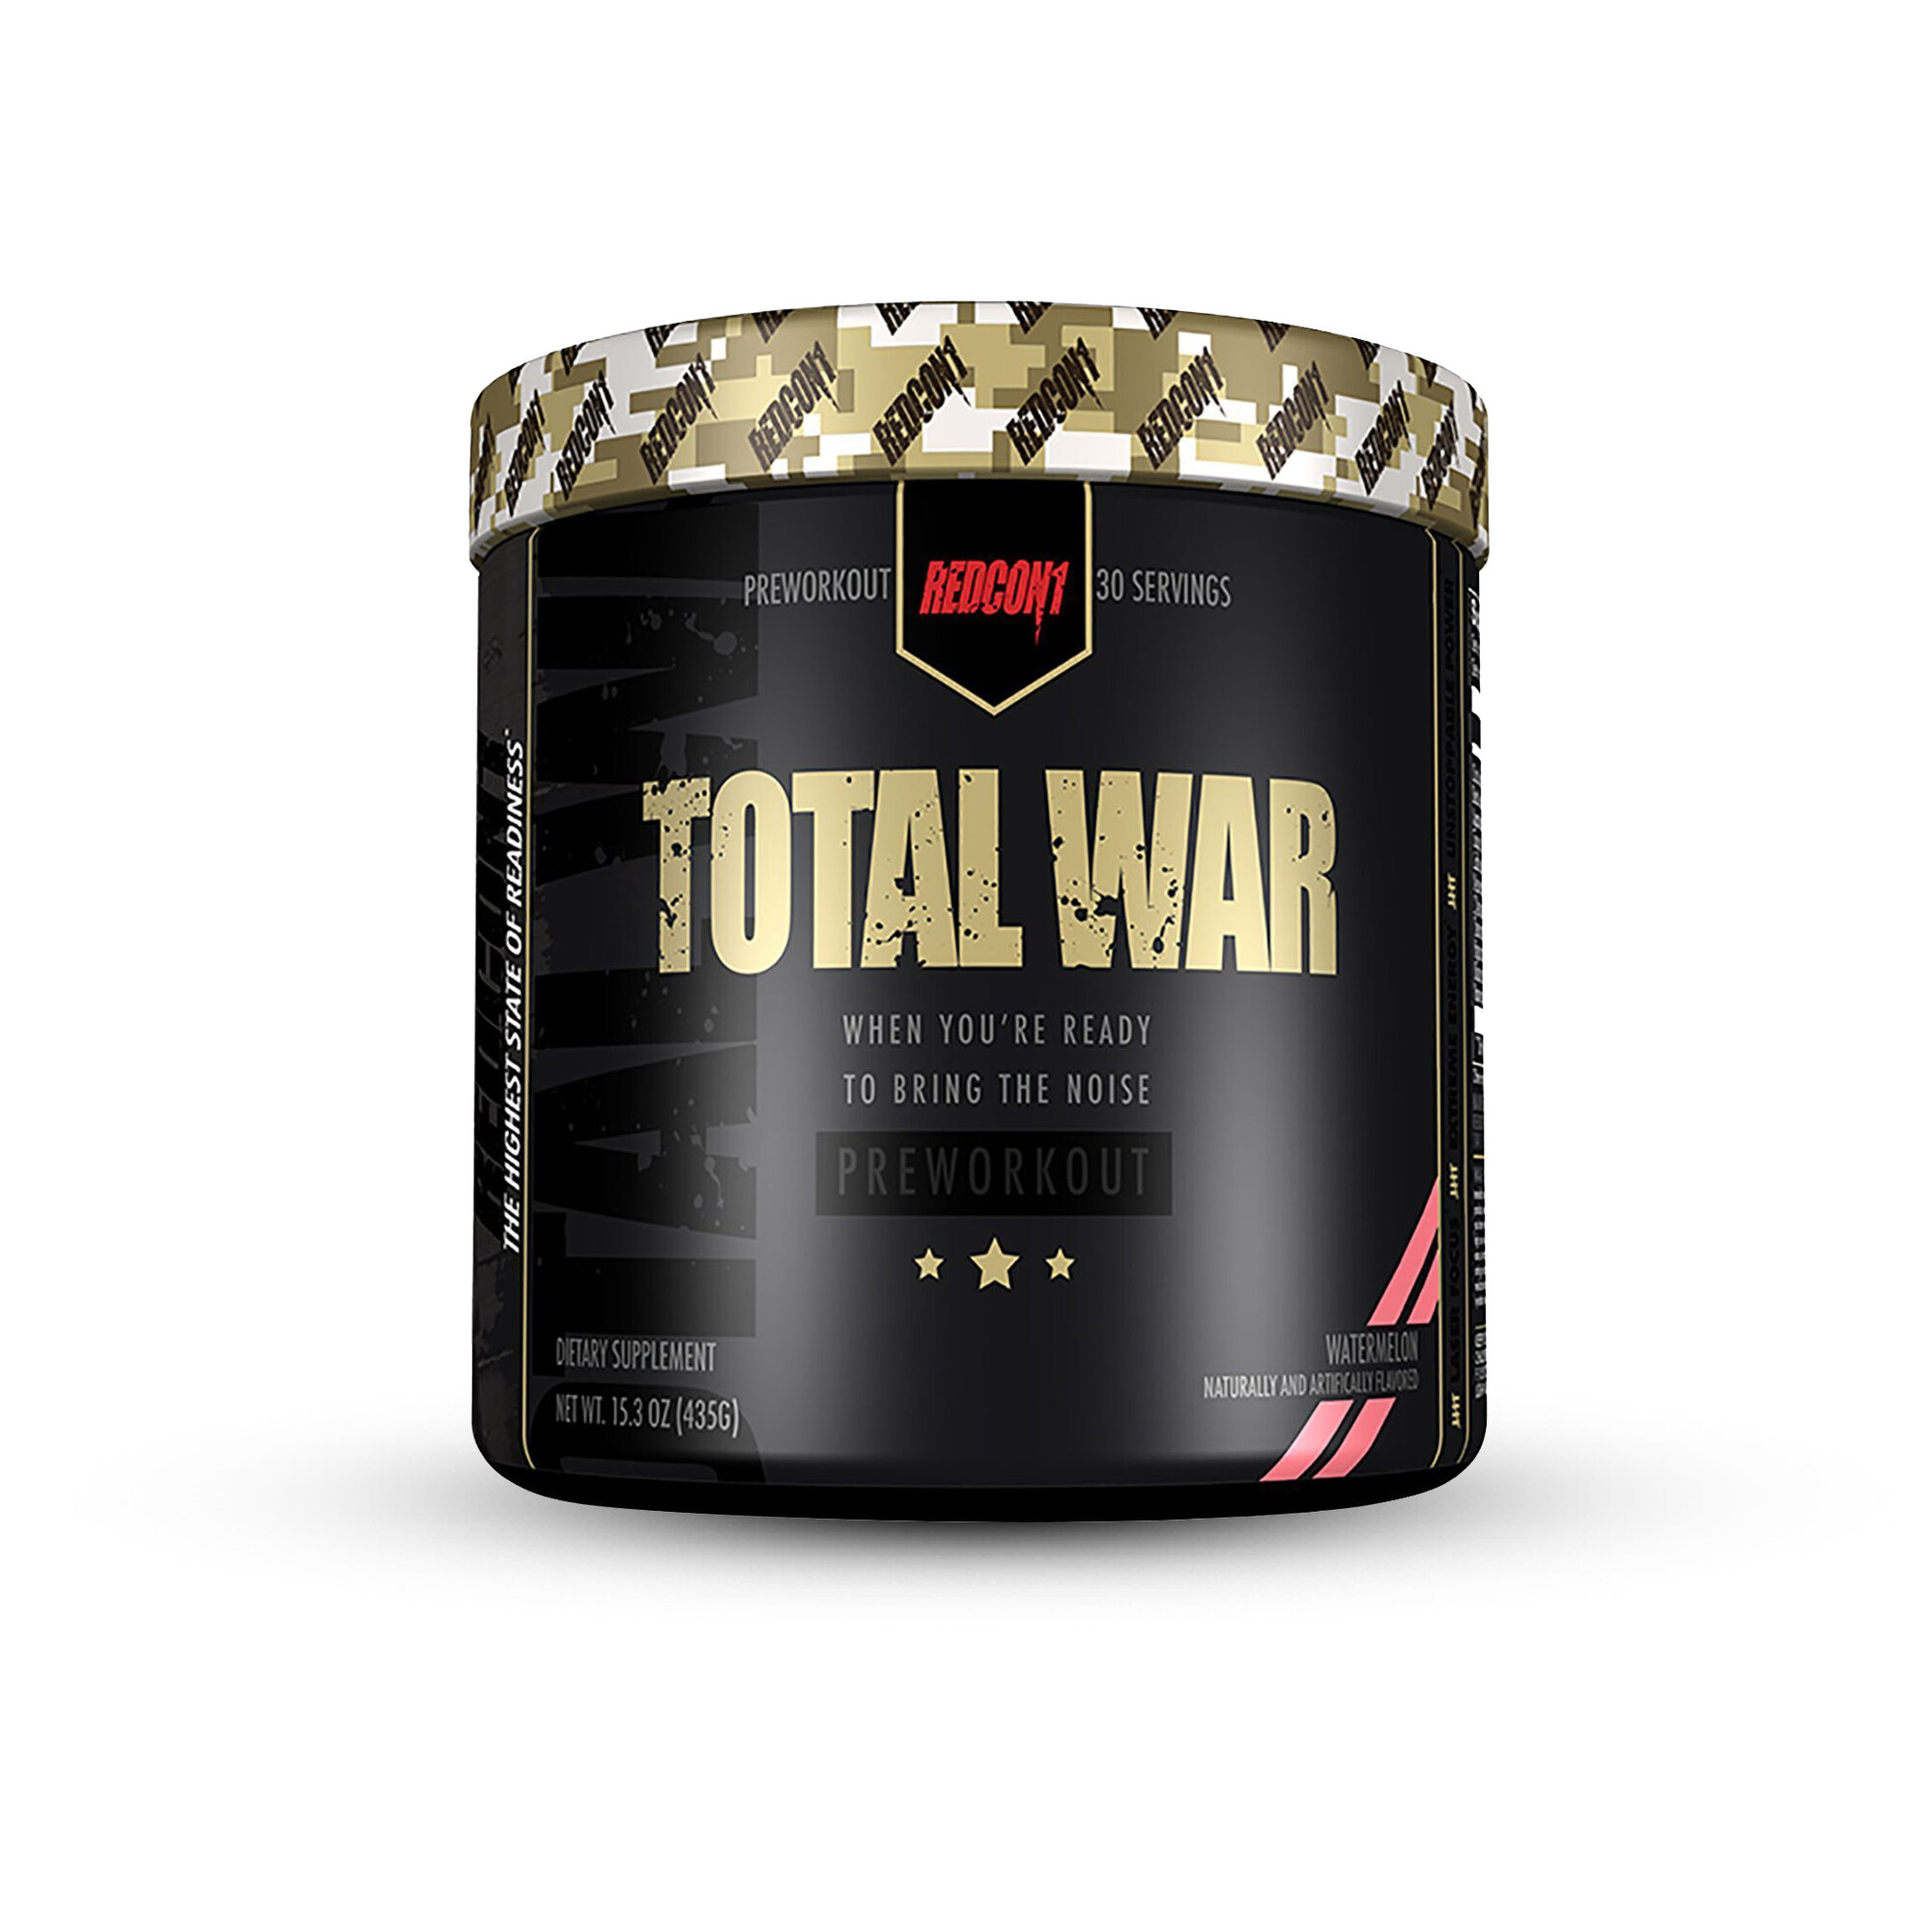 19-total-war-supplement-facts